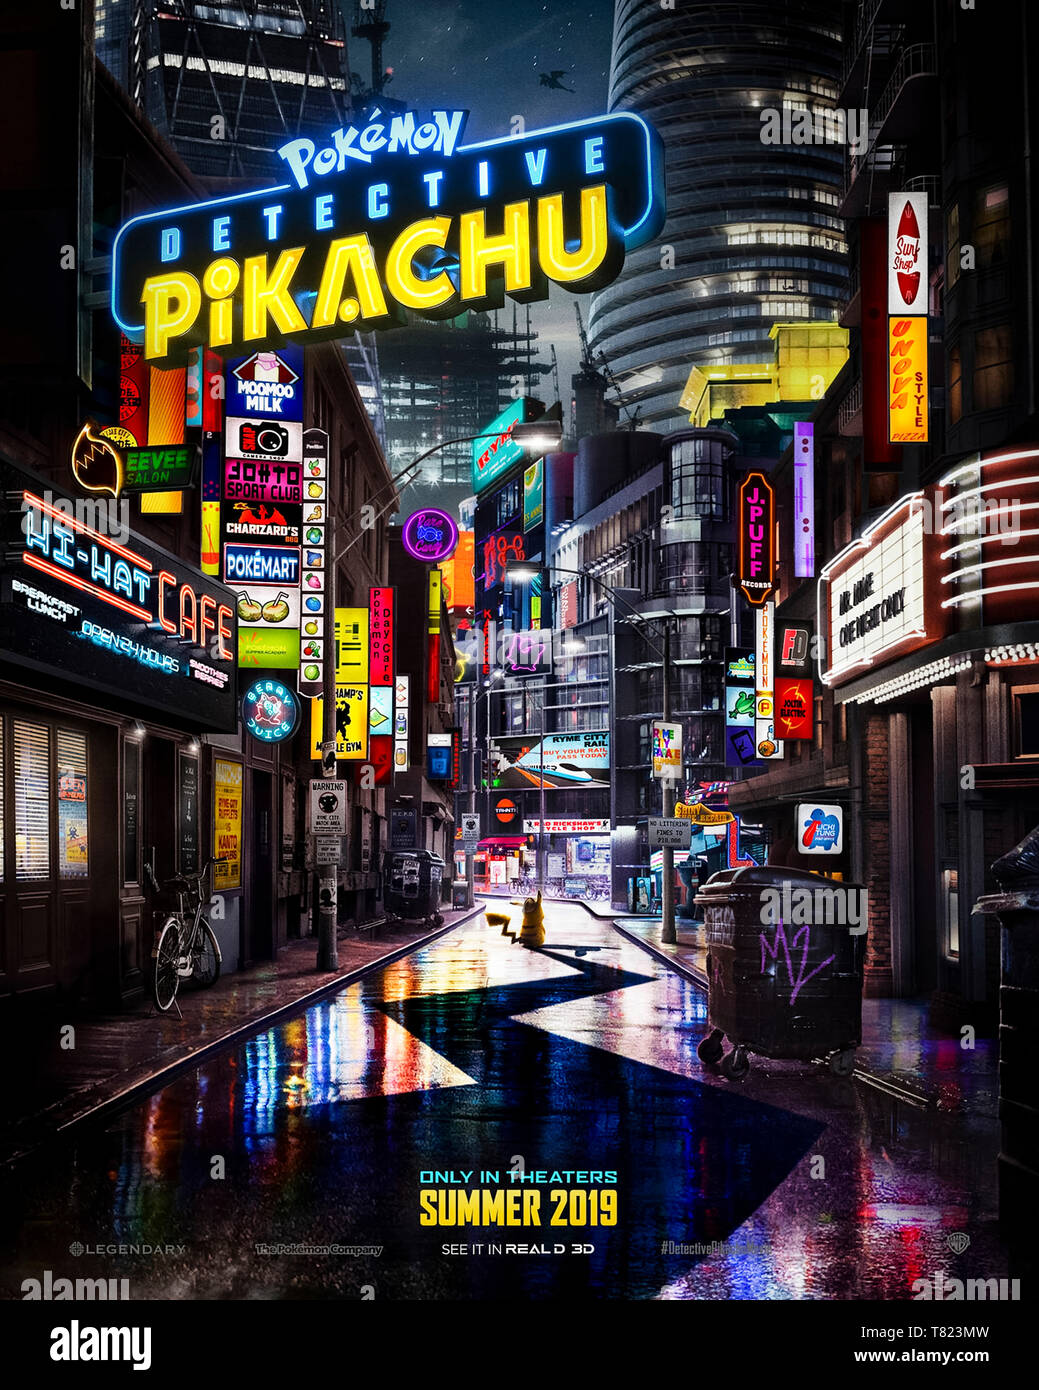 Détective Pokémon Pikachu (2019) réalisé par Rob Letterman et mettant en vedette Ryan Reynolds, le juge Smith et Kathryn Newton. Fin limier detective Pikachu aide un fils trouver son père manquant. Banque D'Images